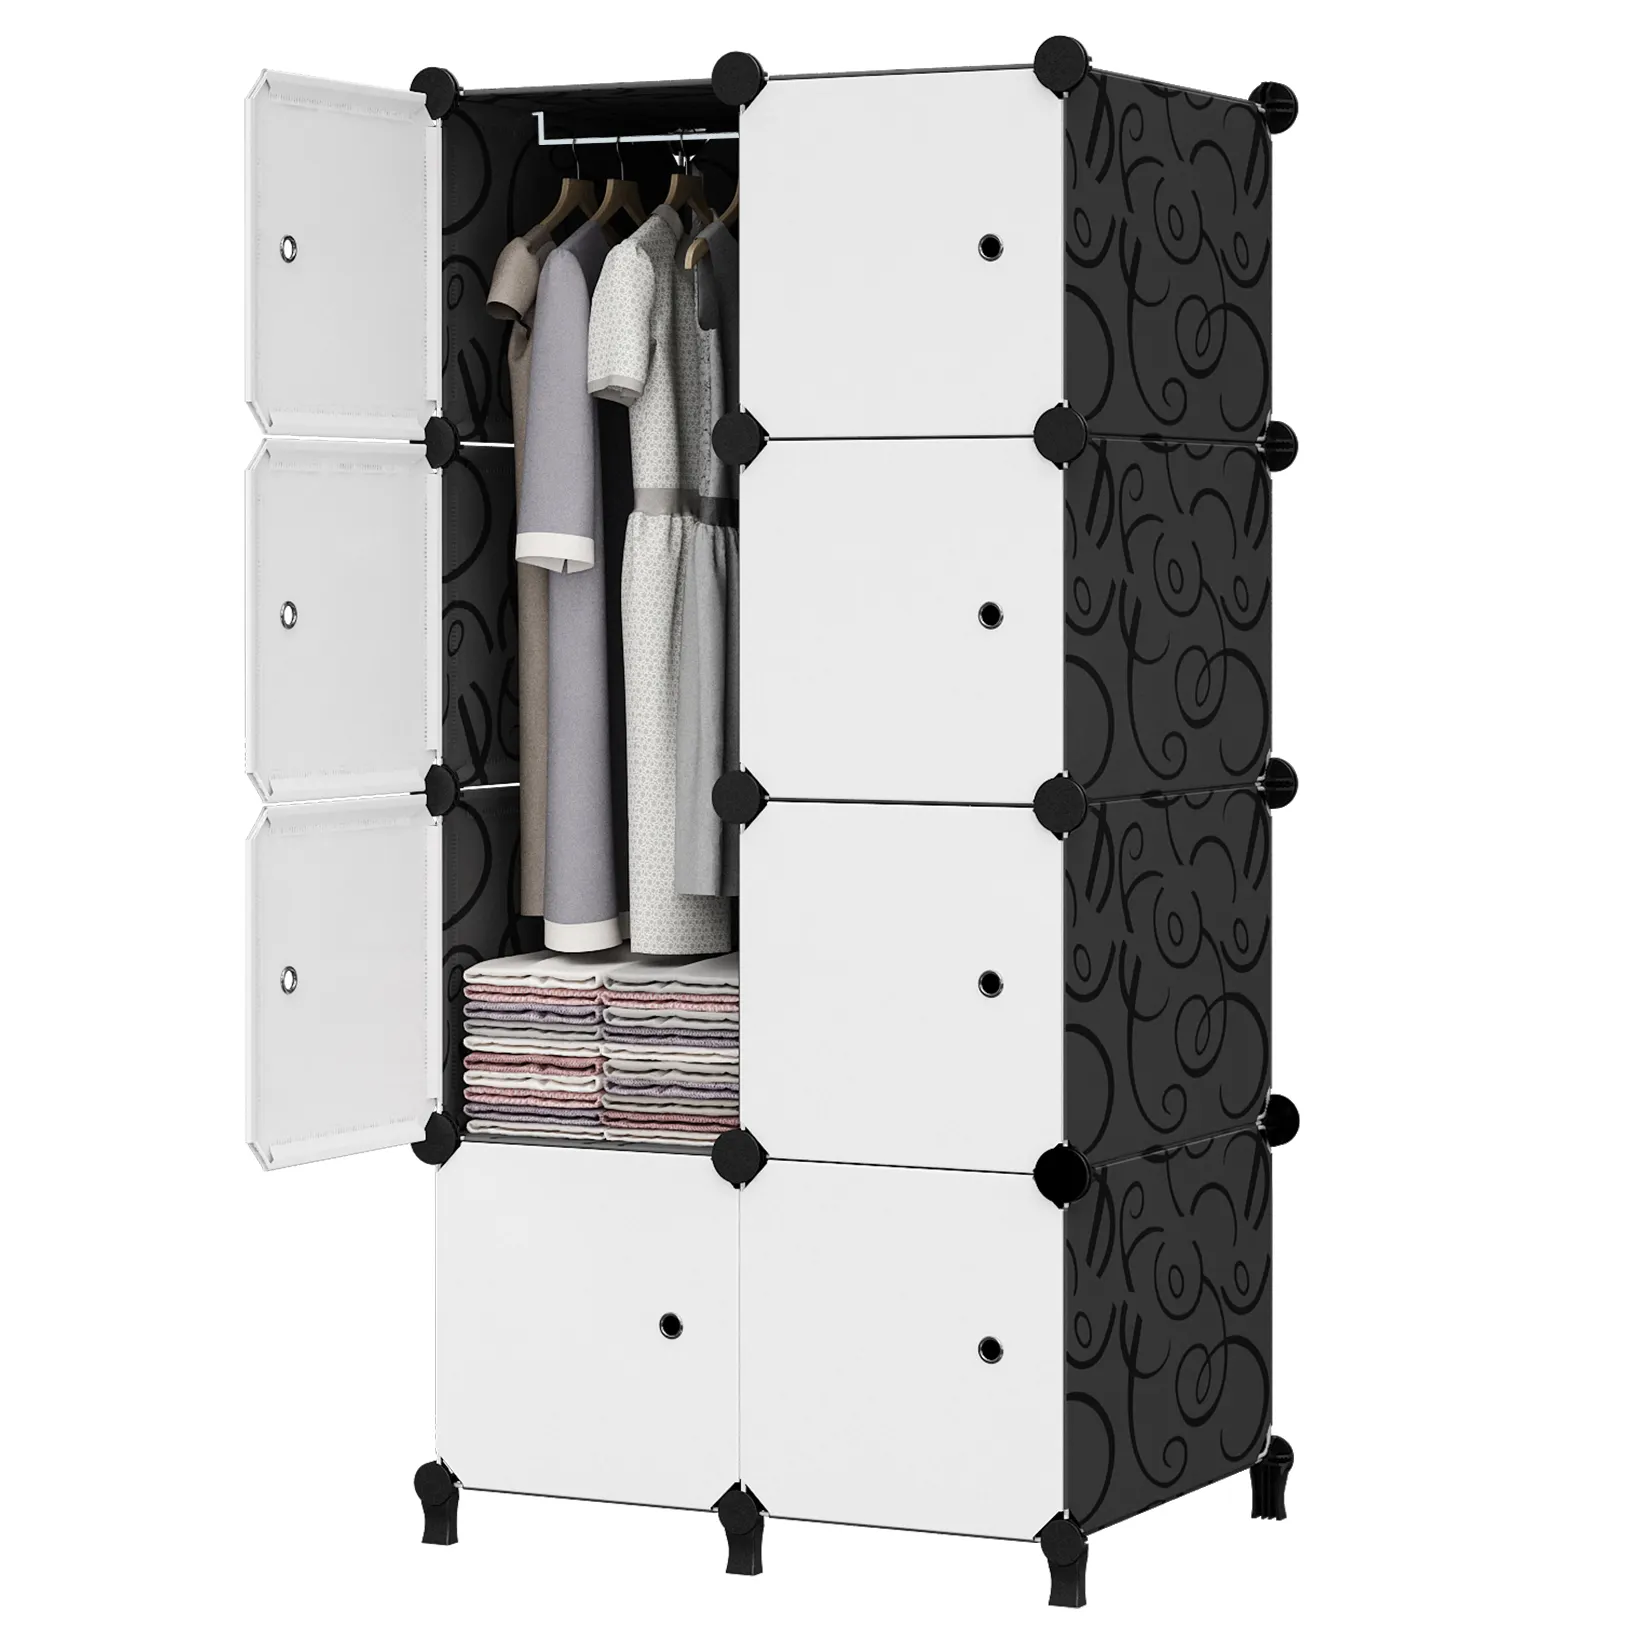 Black Eight-grid High-quality Diy Cartoon Simple Modern Plastic Wardrobe Cabinet